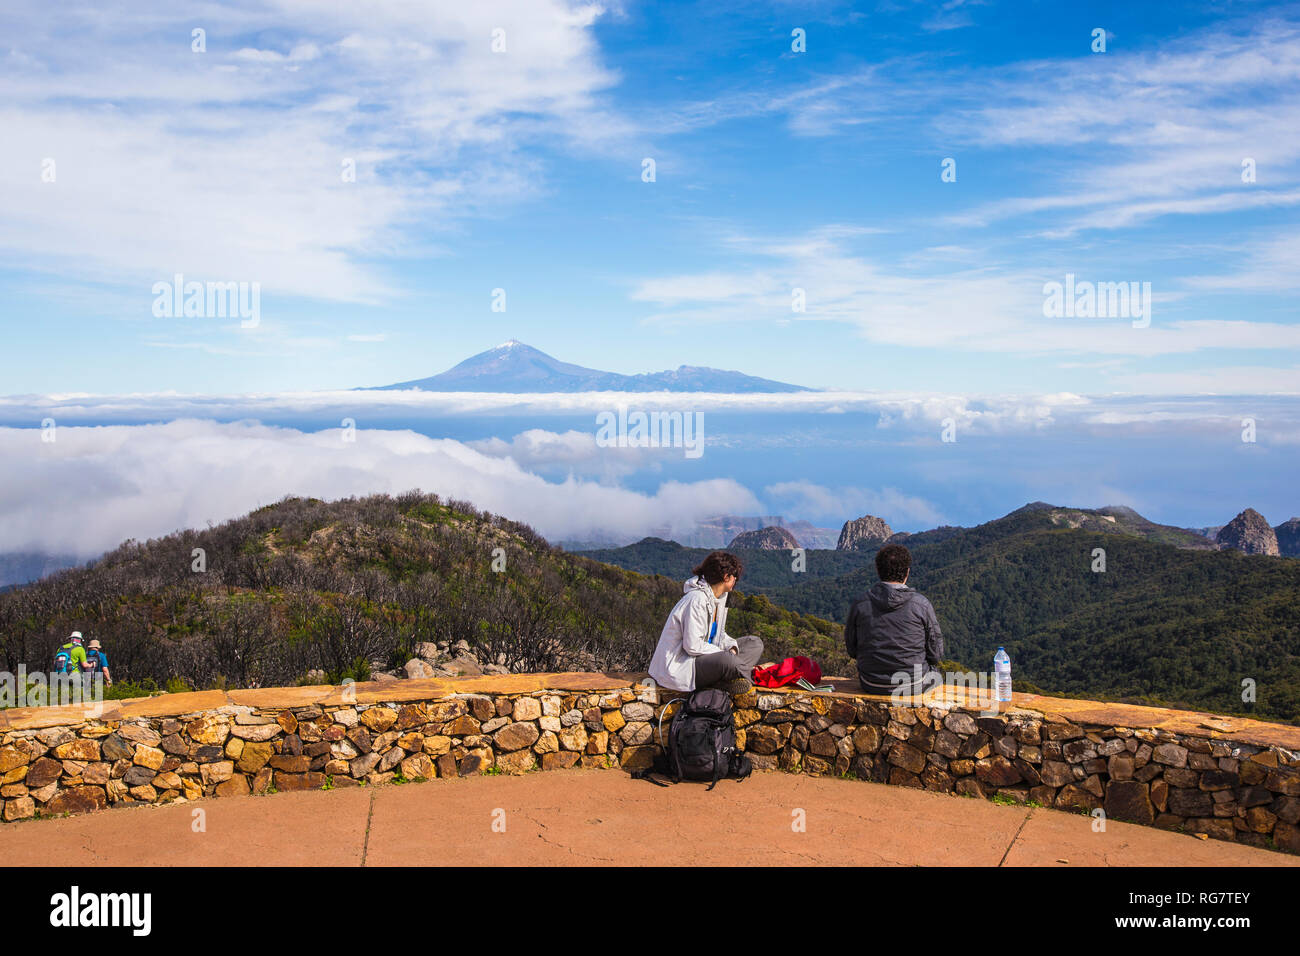 Excursionistas en la cumbre en el Parque Nacional de Garajonay, volcán Teide en Tenerife, La Gomera, Islas Canarias, España, Europa, Wanderer auf dem Gipfel Natio im Foto de stock